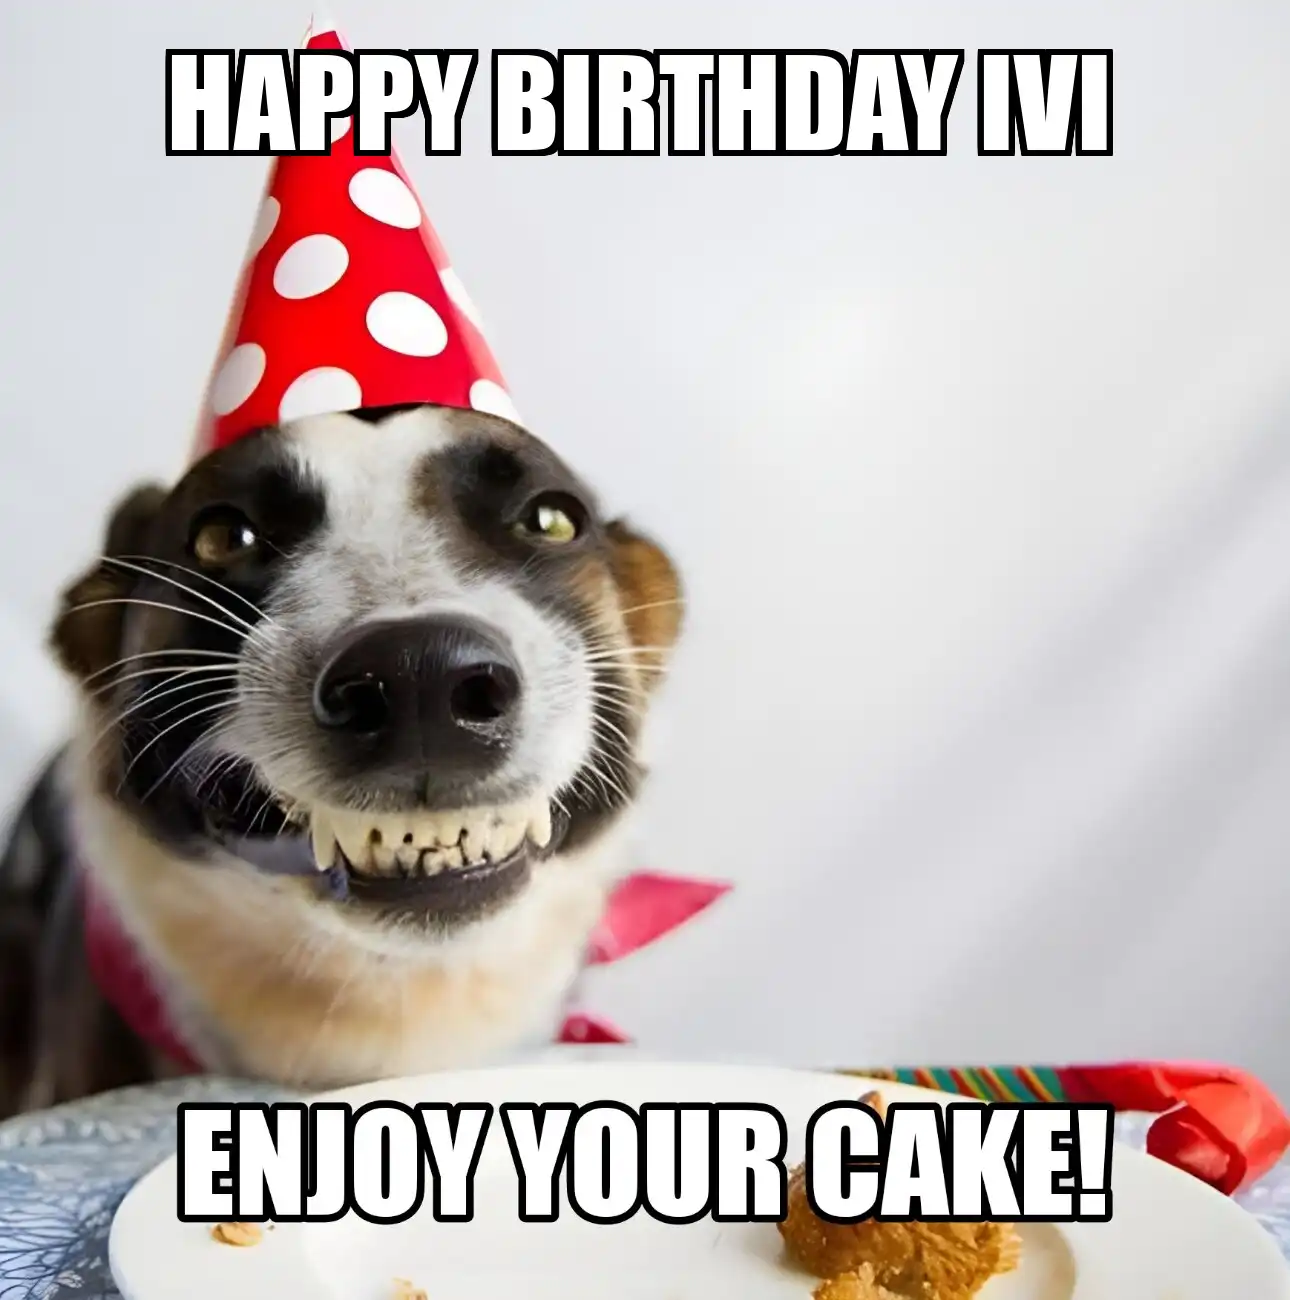 Happy Birthday Ivi Enjoy Your Cake Dog Meme